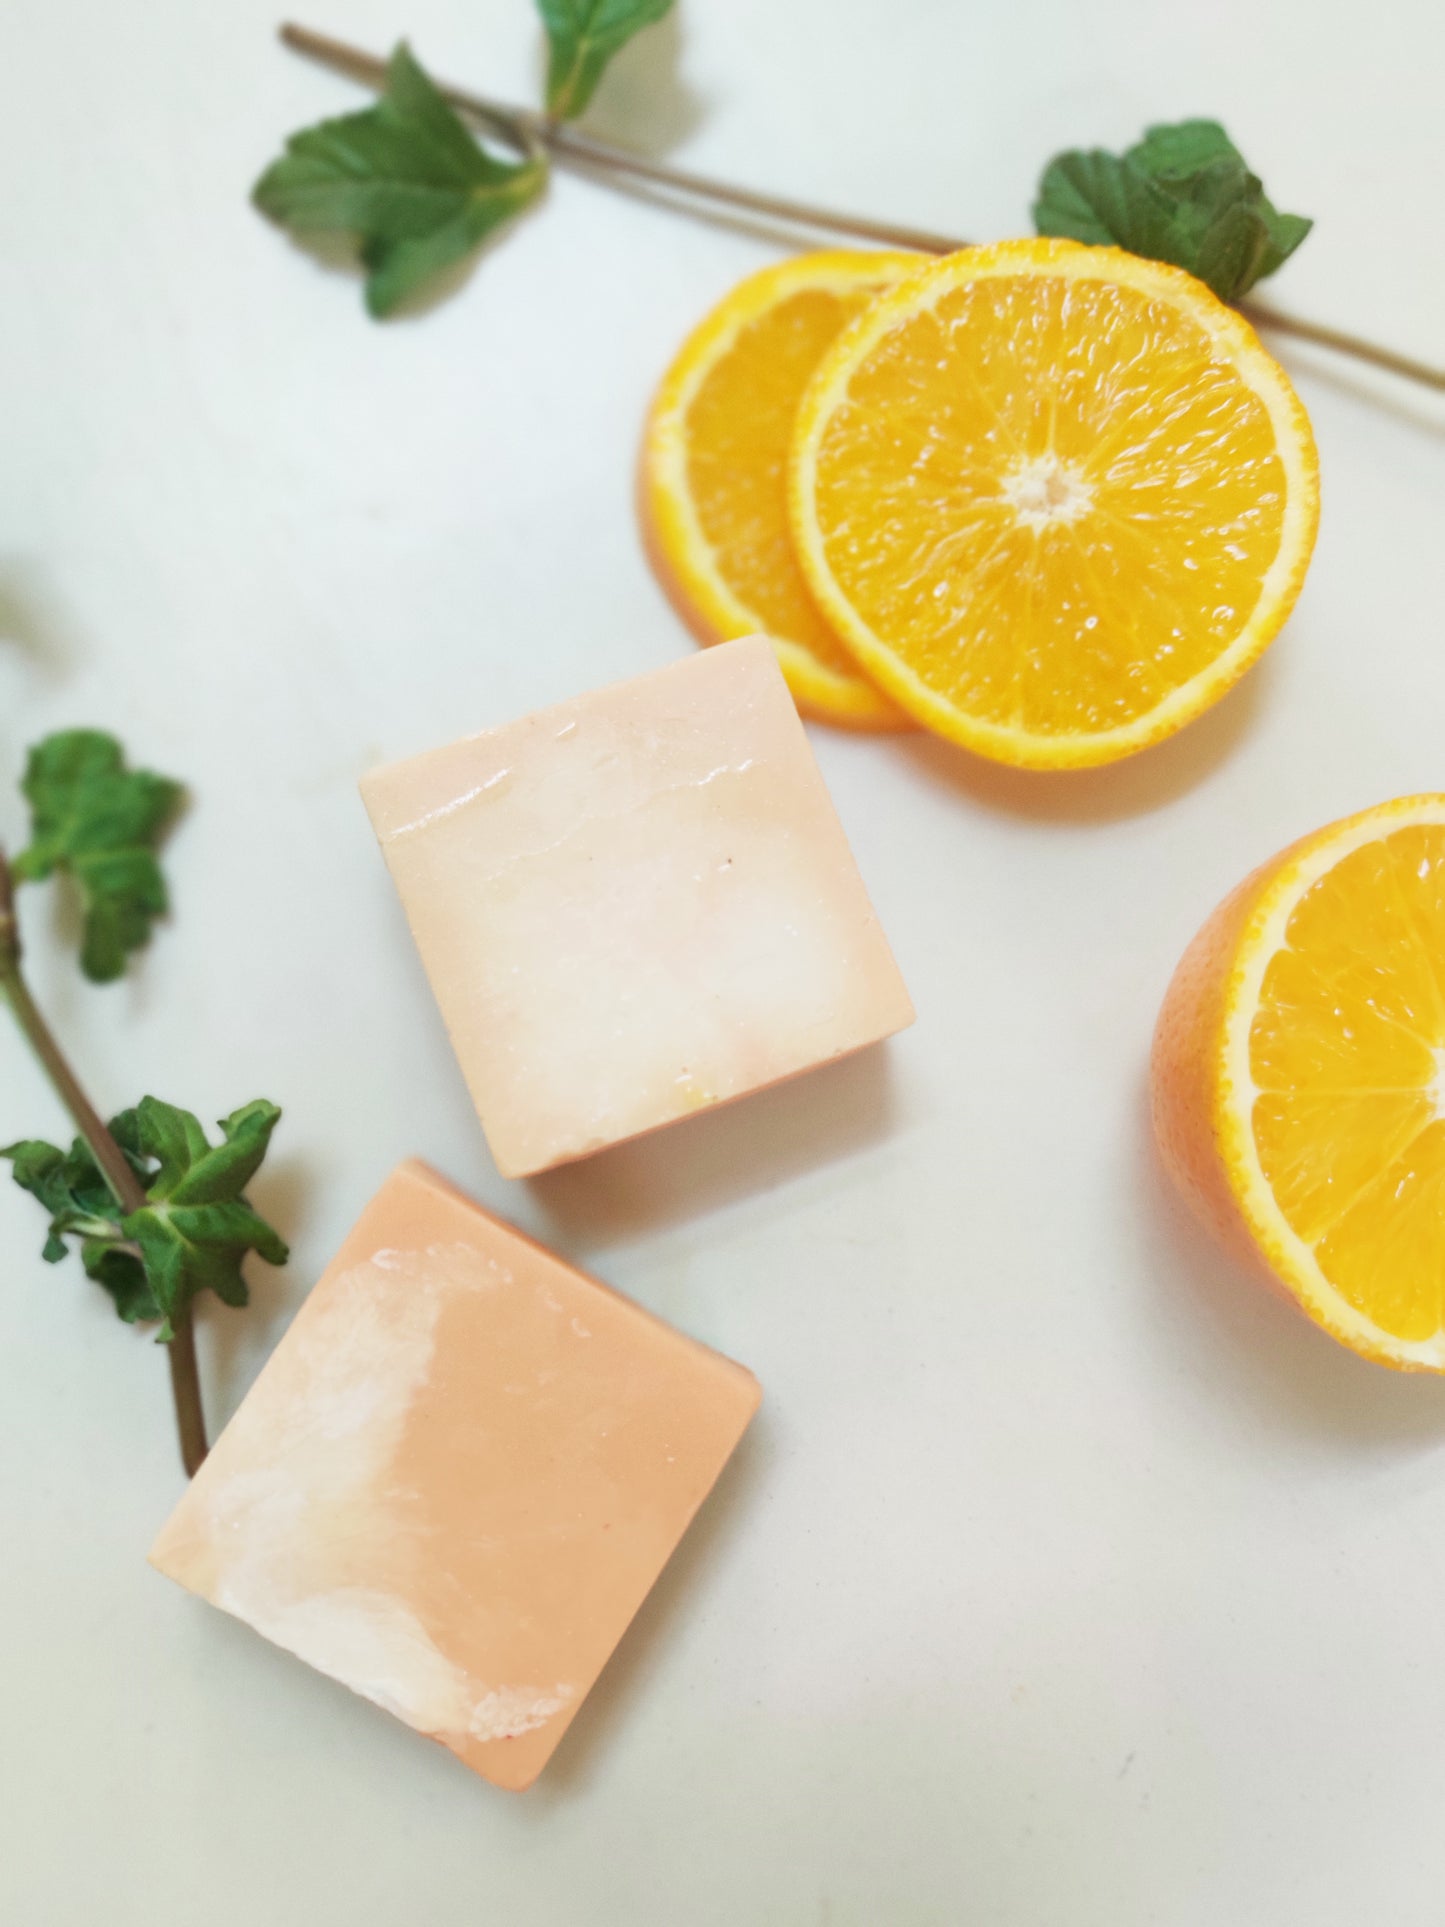 Handmade Artisanal Soap | Gift Hamper | Pack of 3